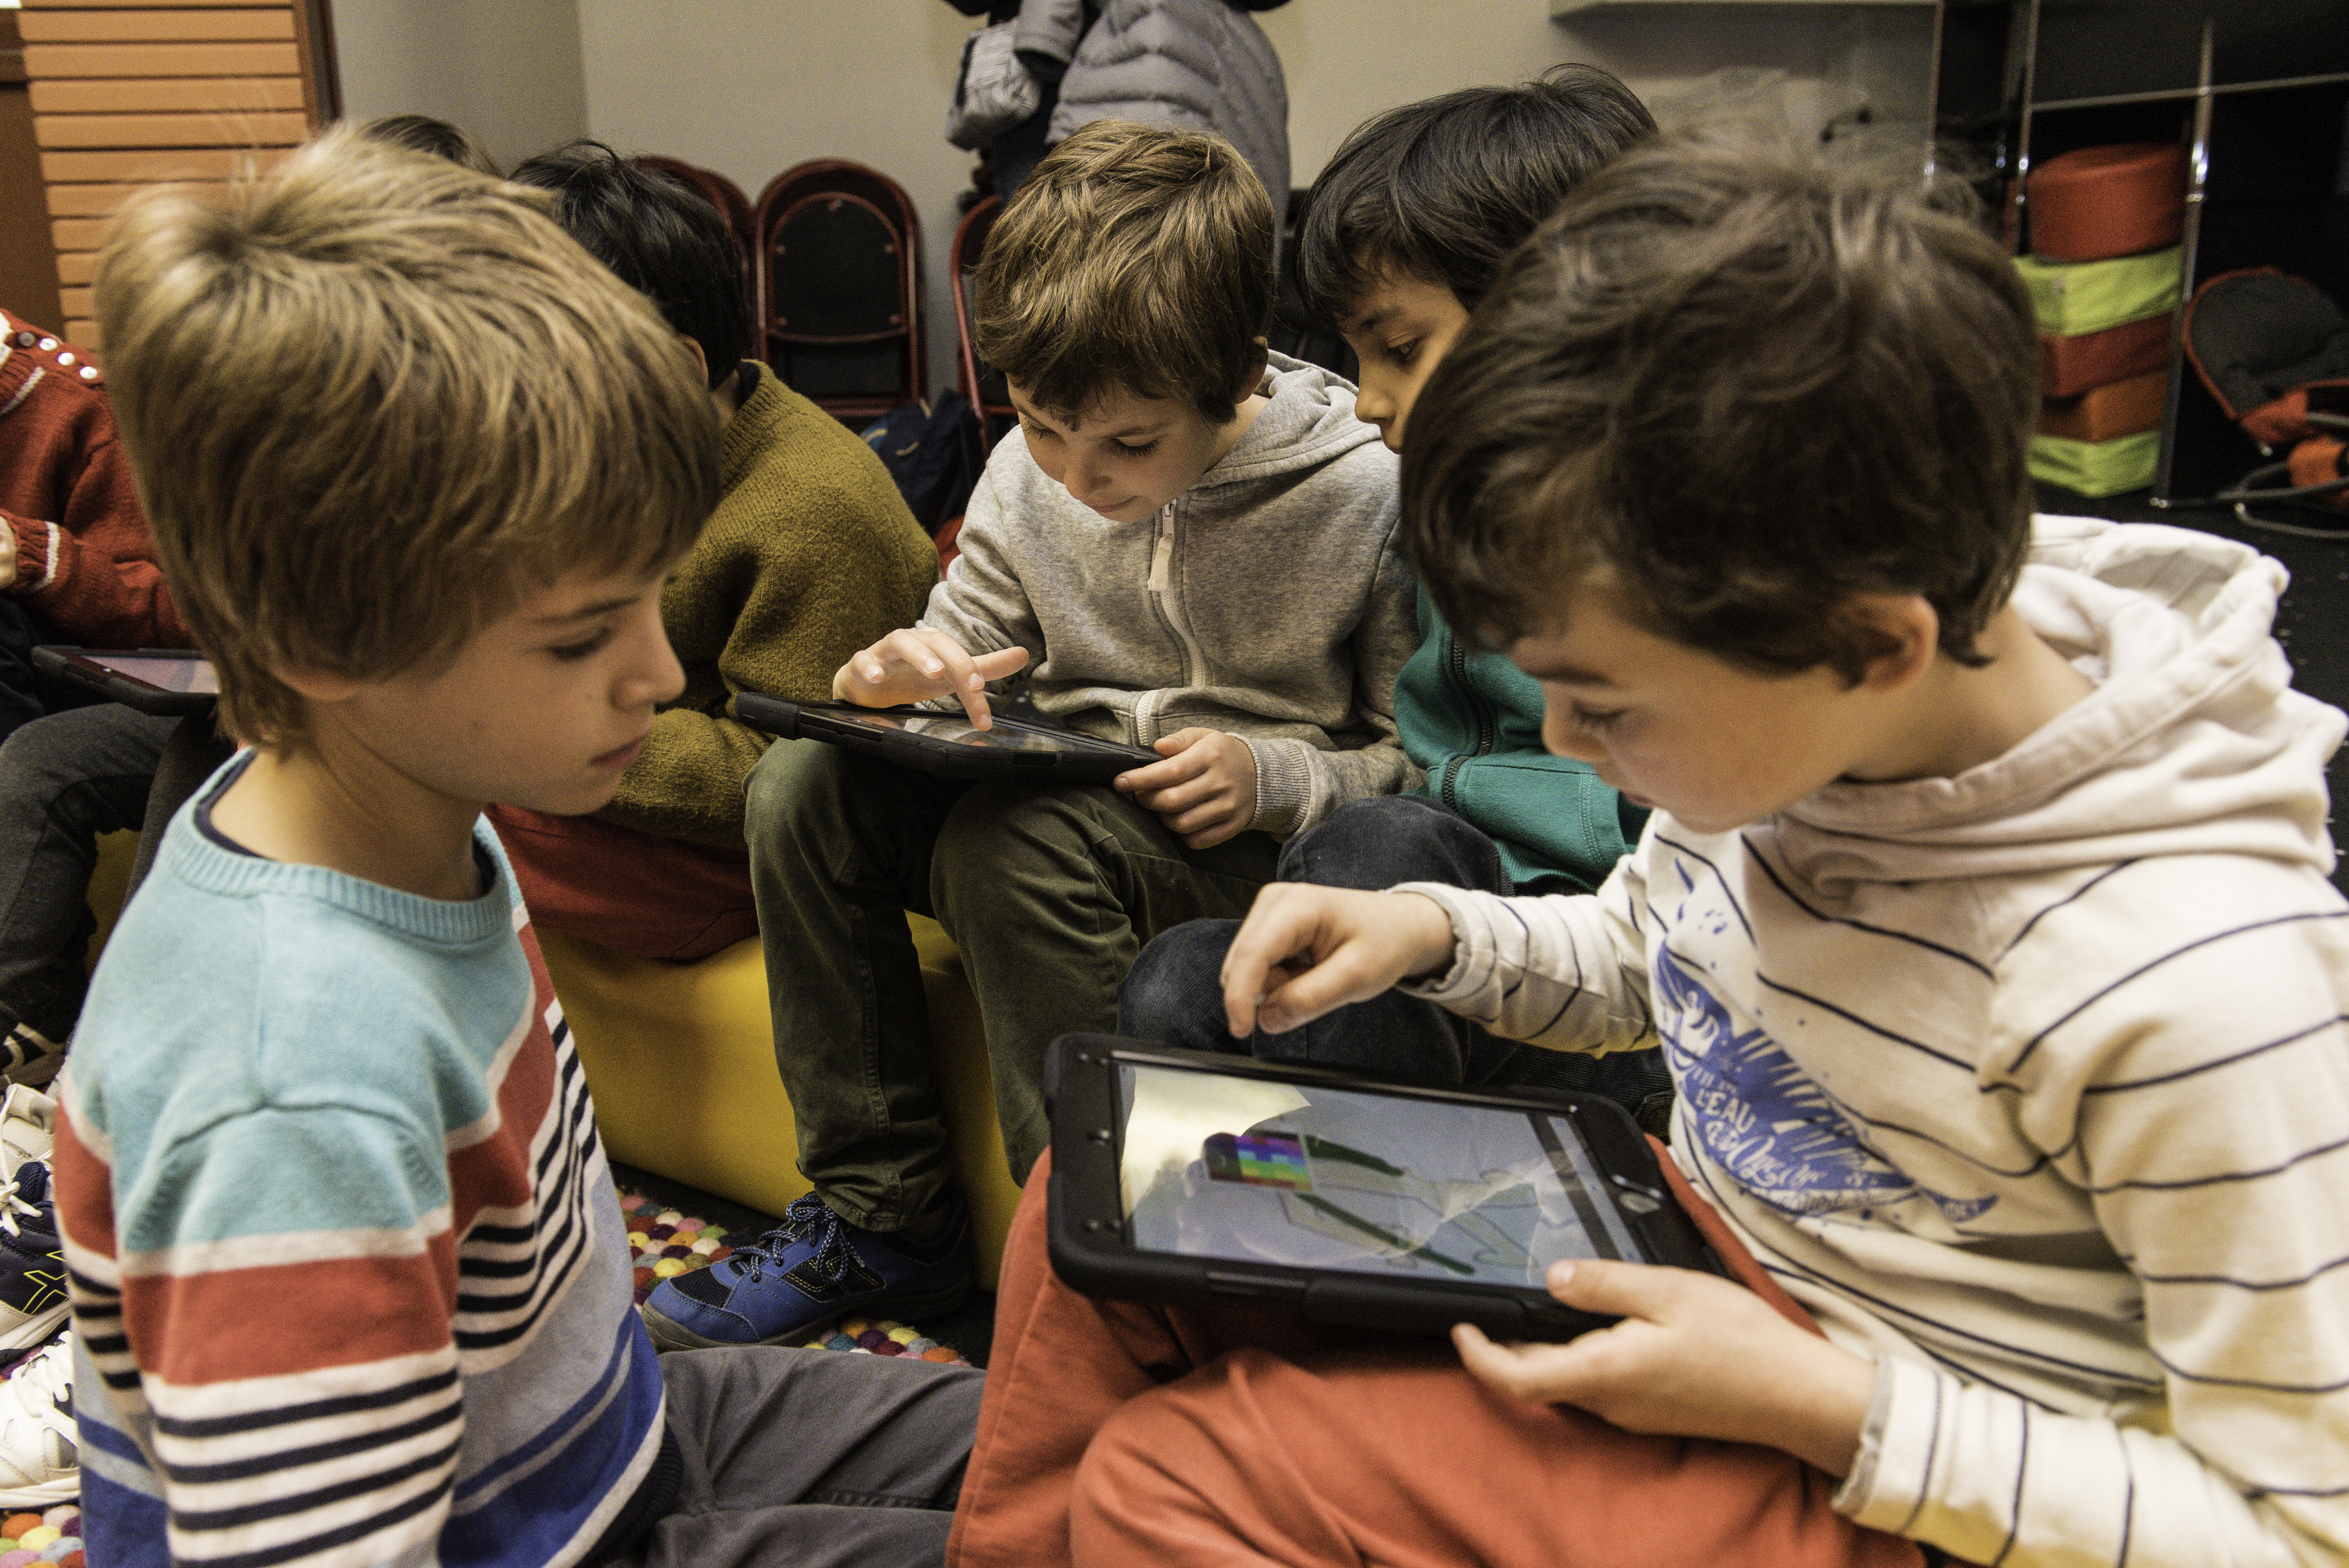 Enfants regardant une tablette à la médiathèque Marguerite Yourcenar